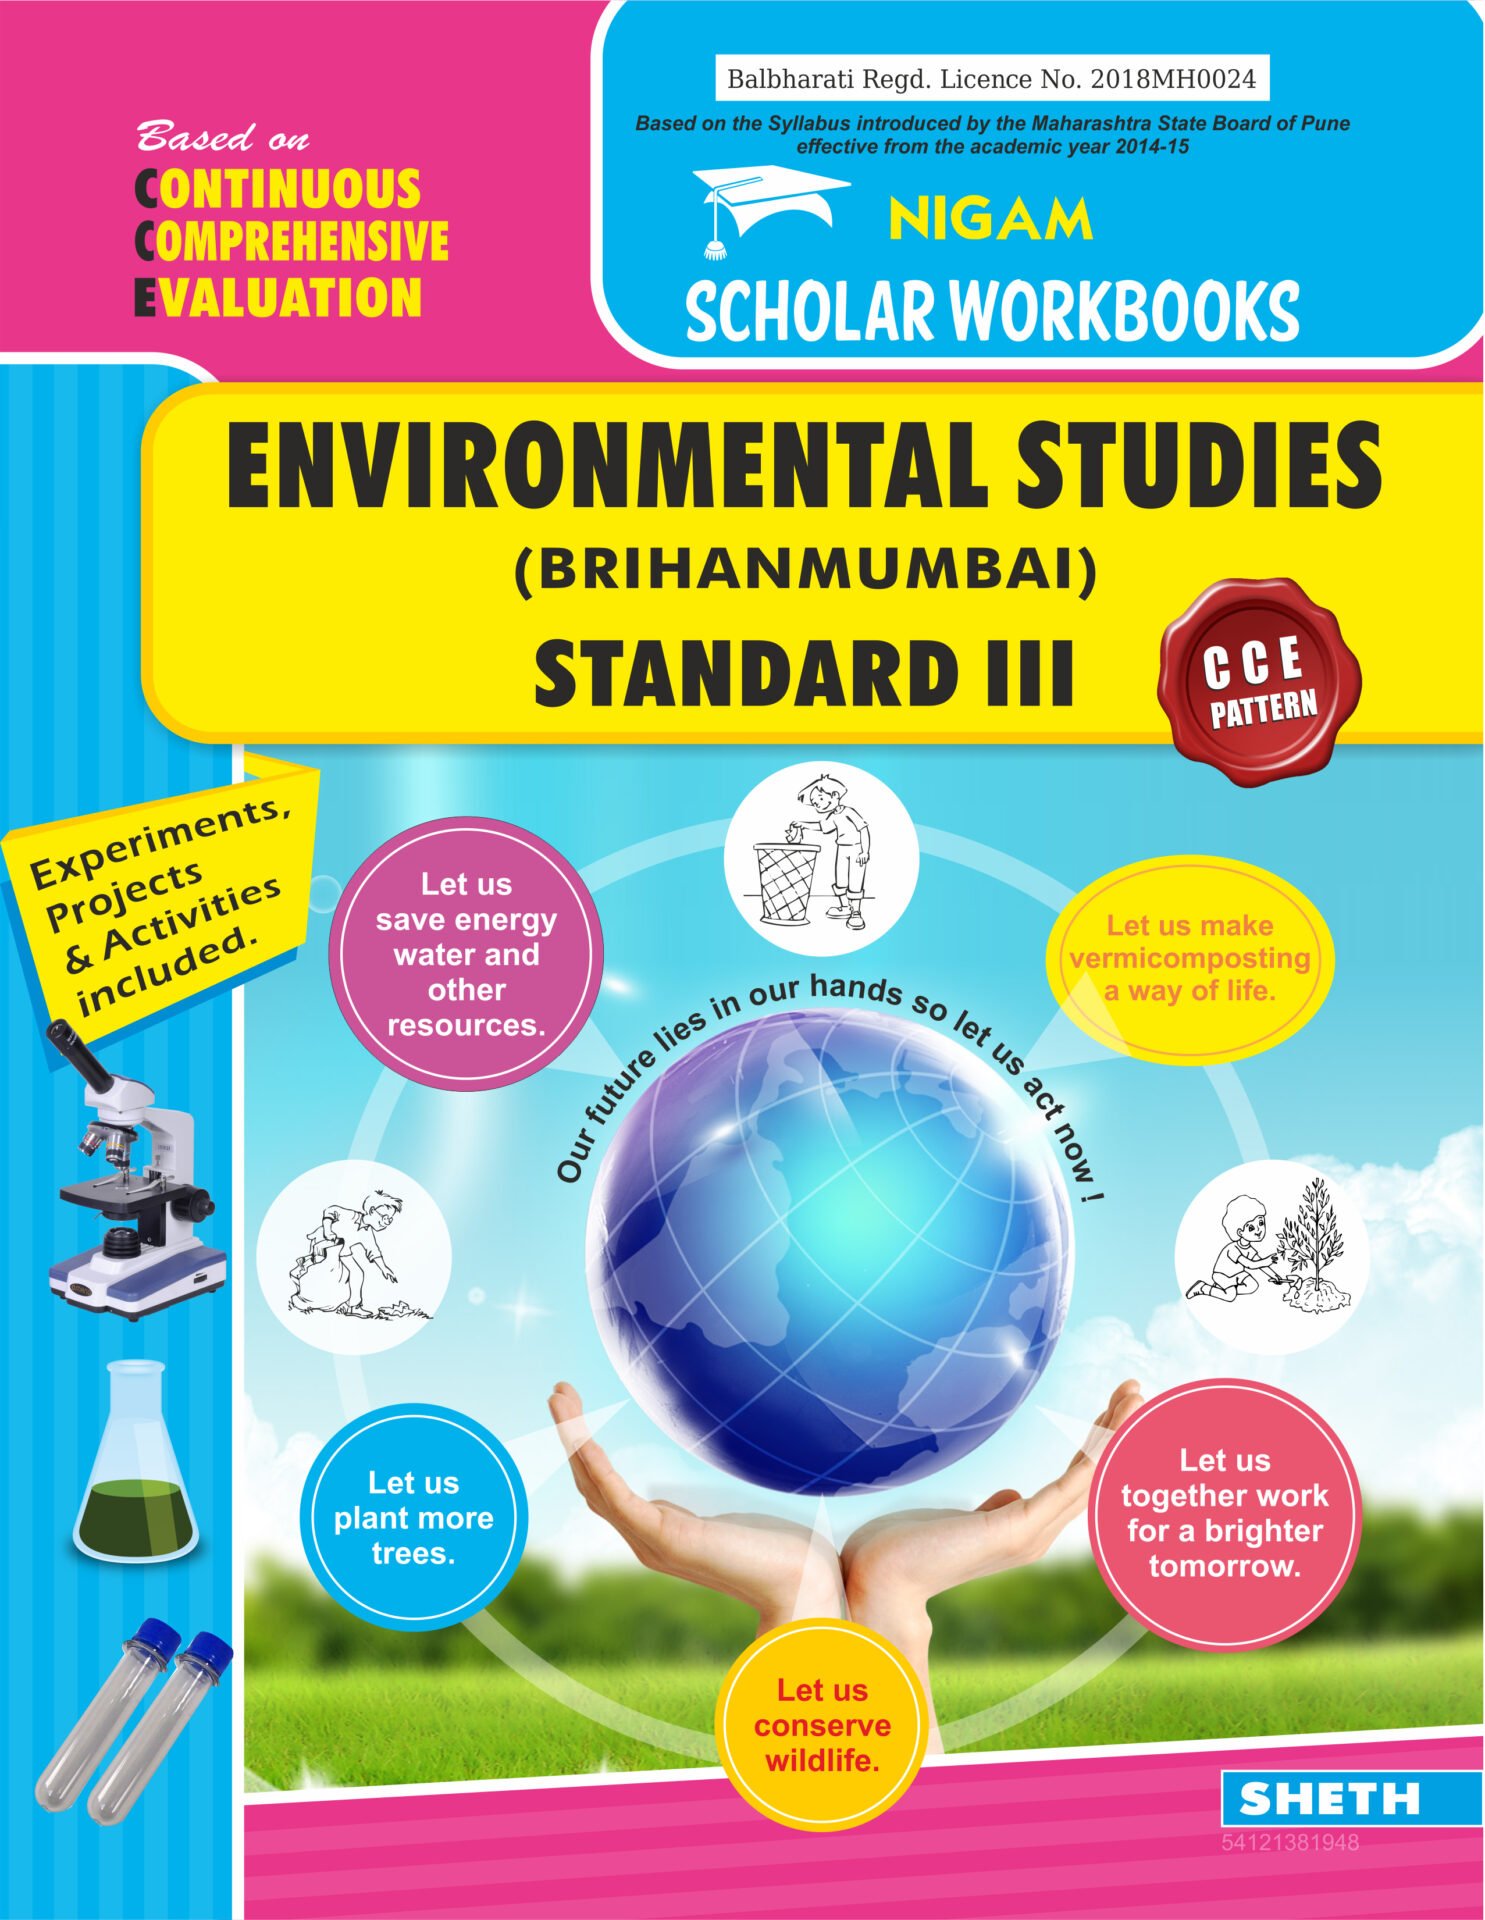 CCE Pattern Nigam Scholar Workbooks Environmental Studies BrihanMumbai Standard 3 1